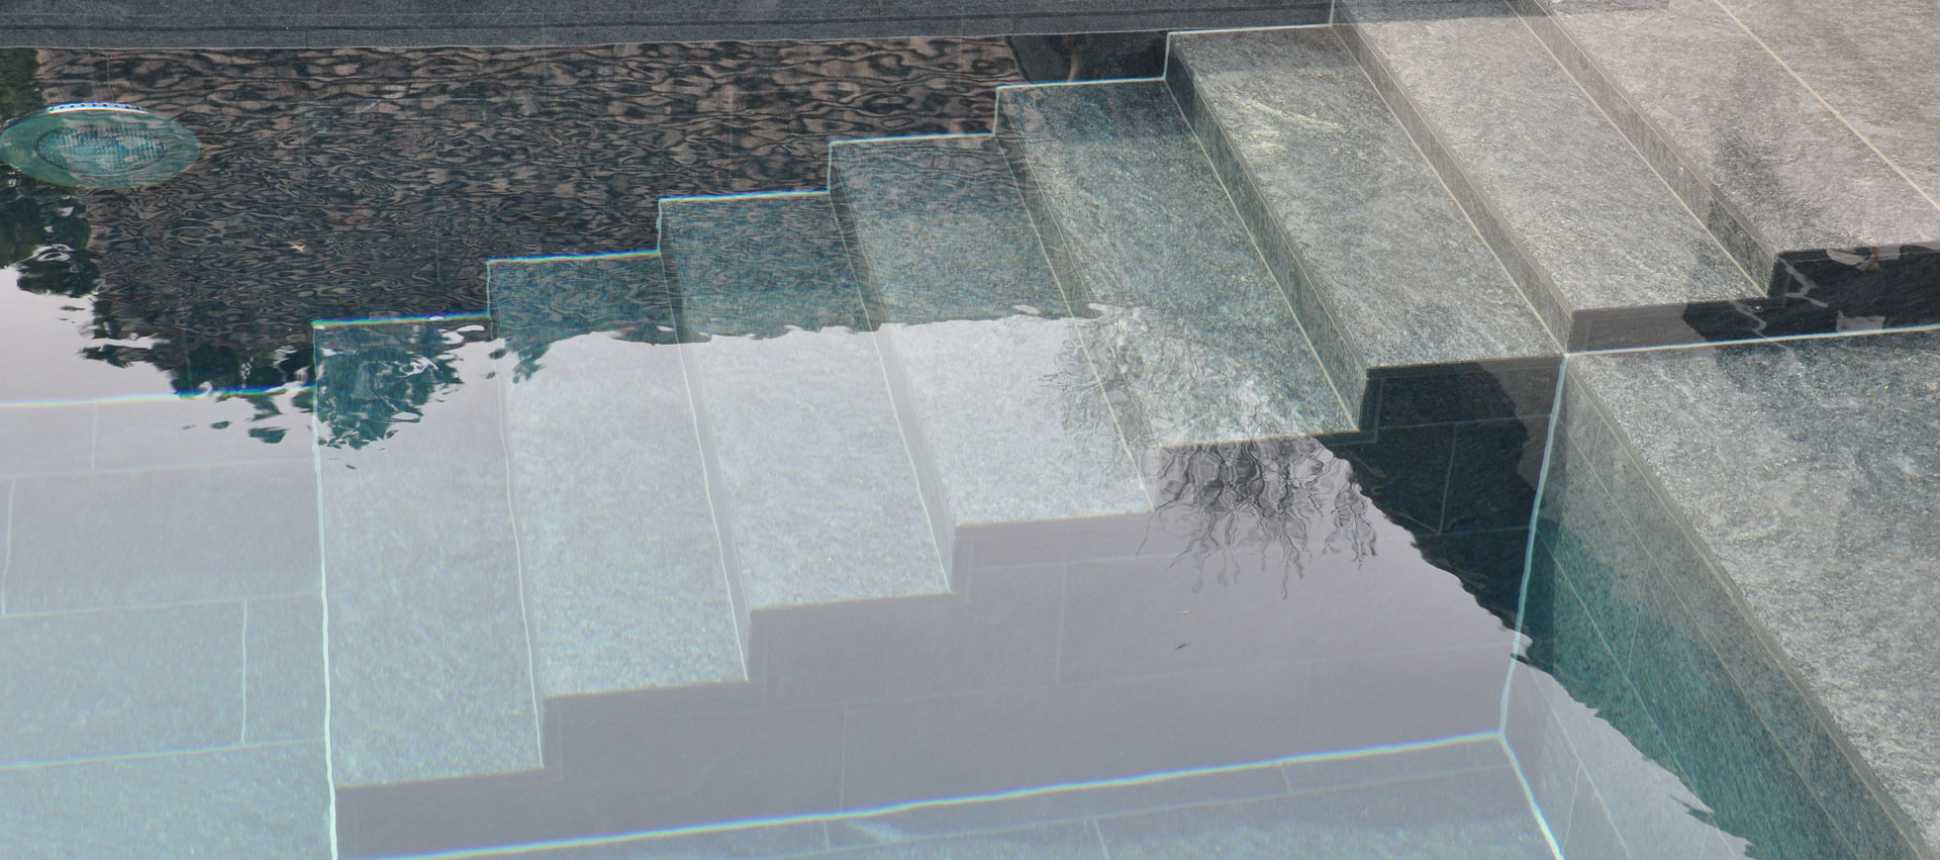 Schwimmbadsanierung Betonpool Swimming pool beton